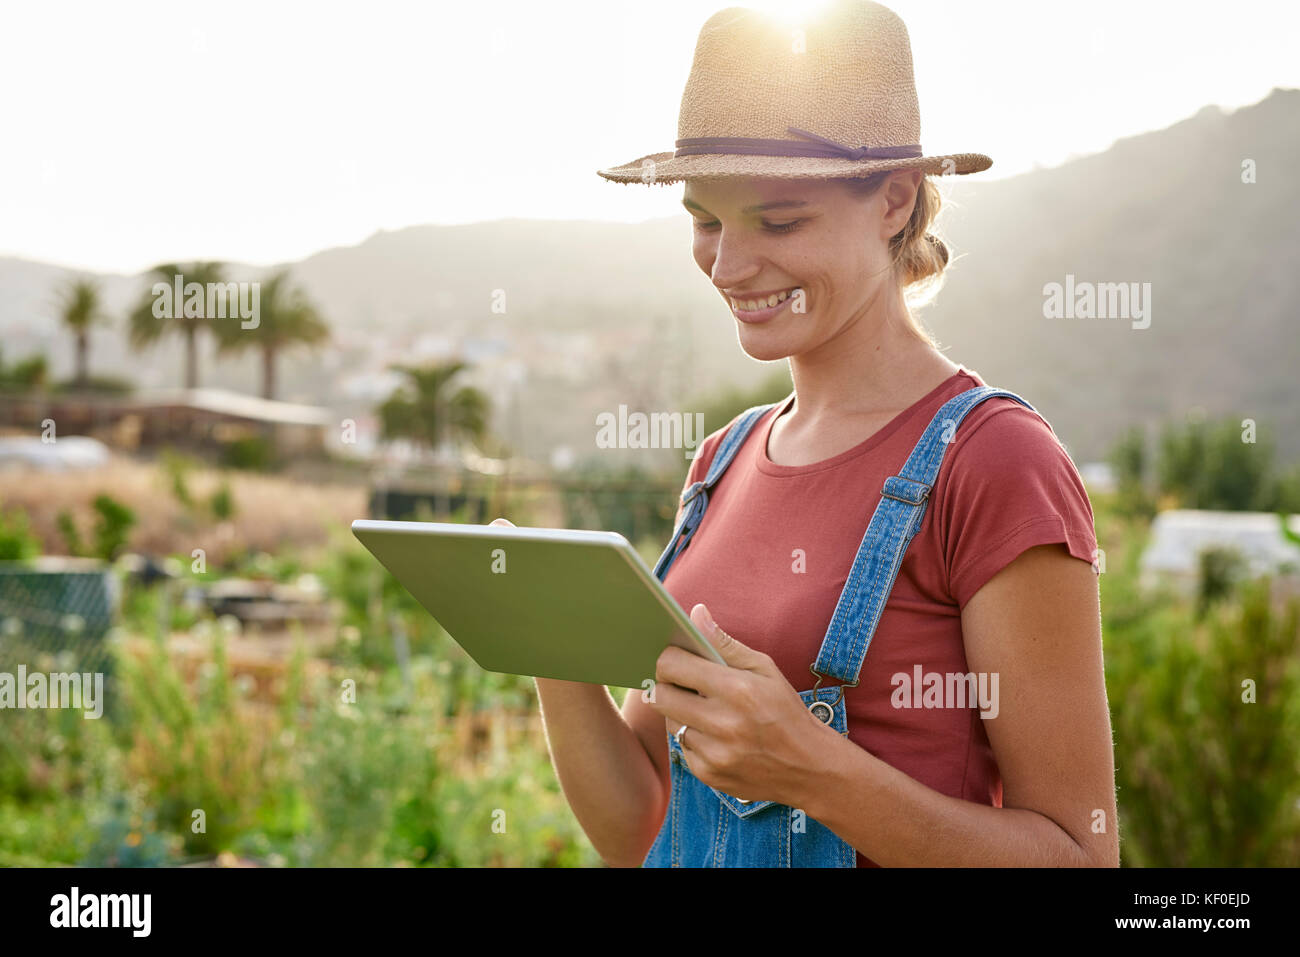 Spanien, Kanarische Inseln, Gran Canaria, lächelnden jungen Frau an Tablet suchen Stockfoto